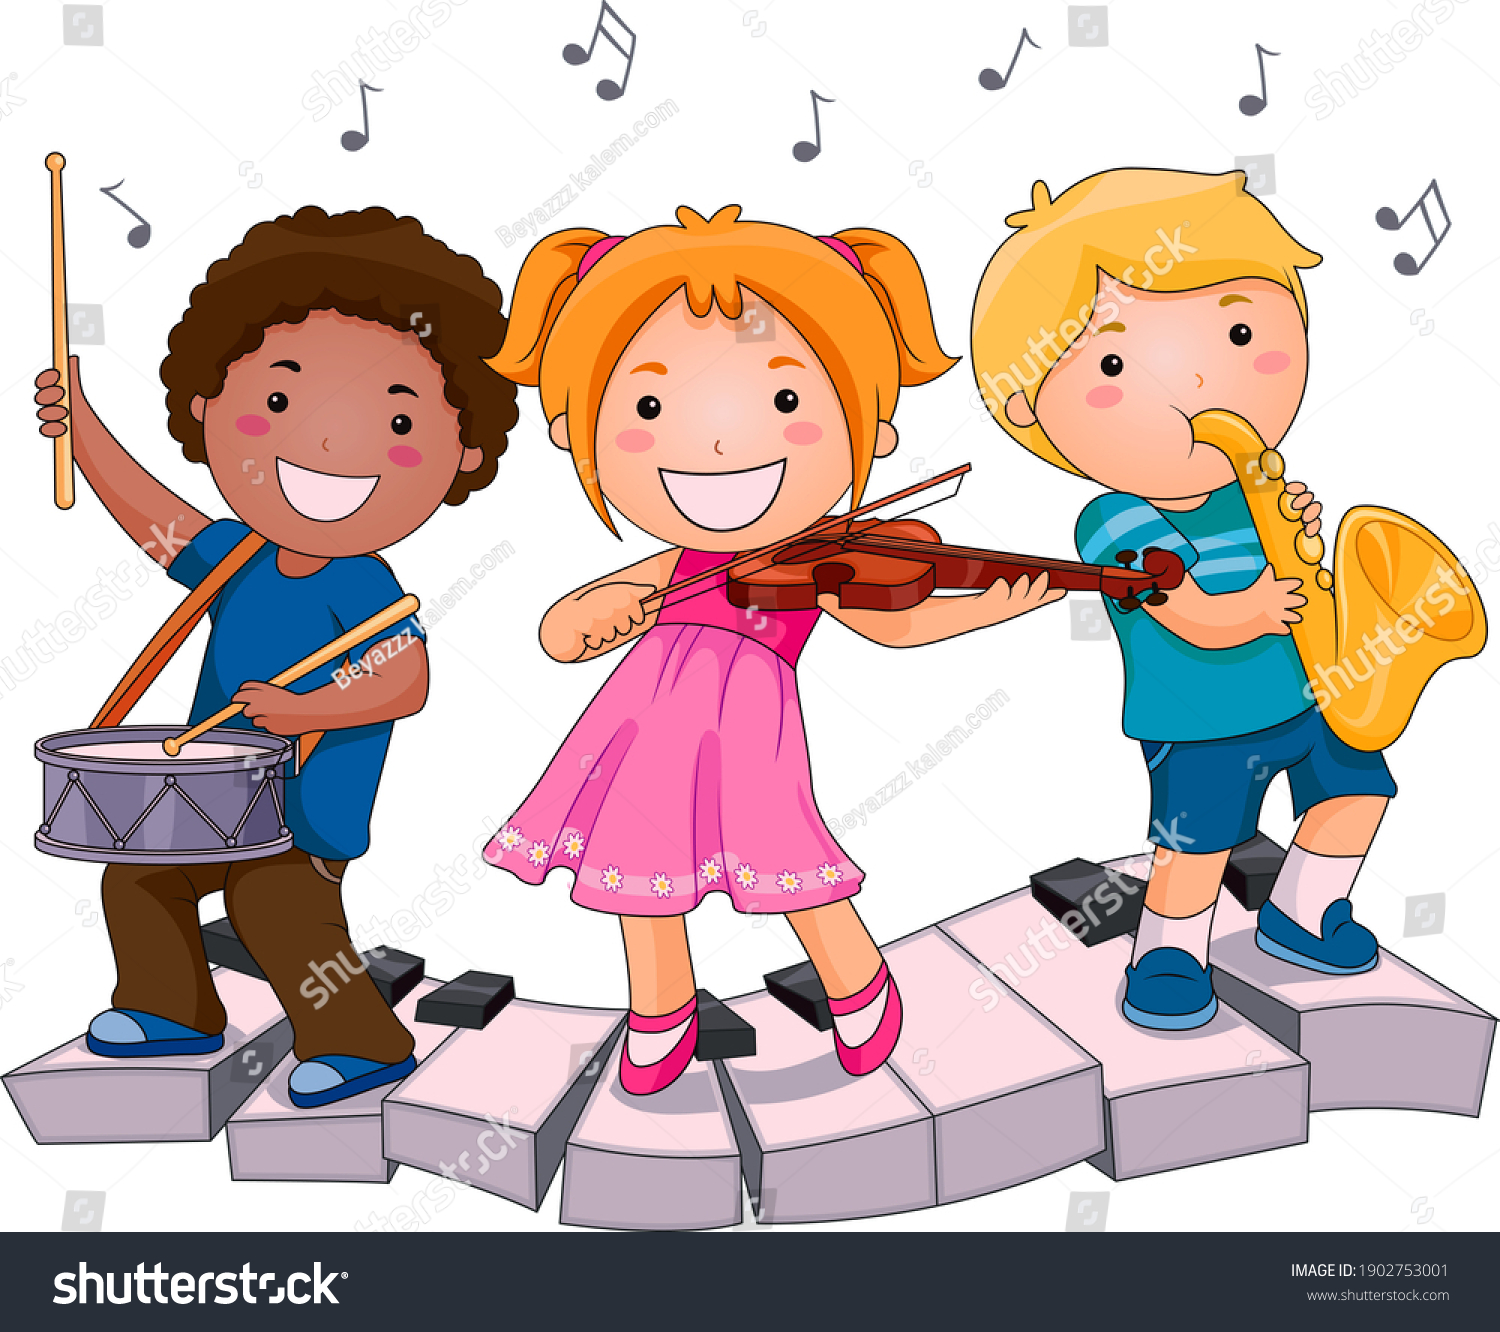 Дети играют на музыкальных инструментах